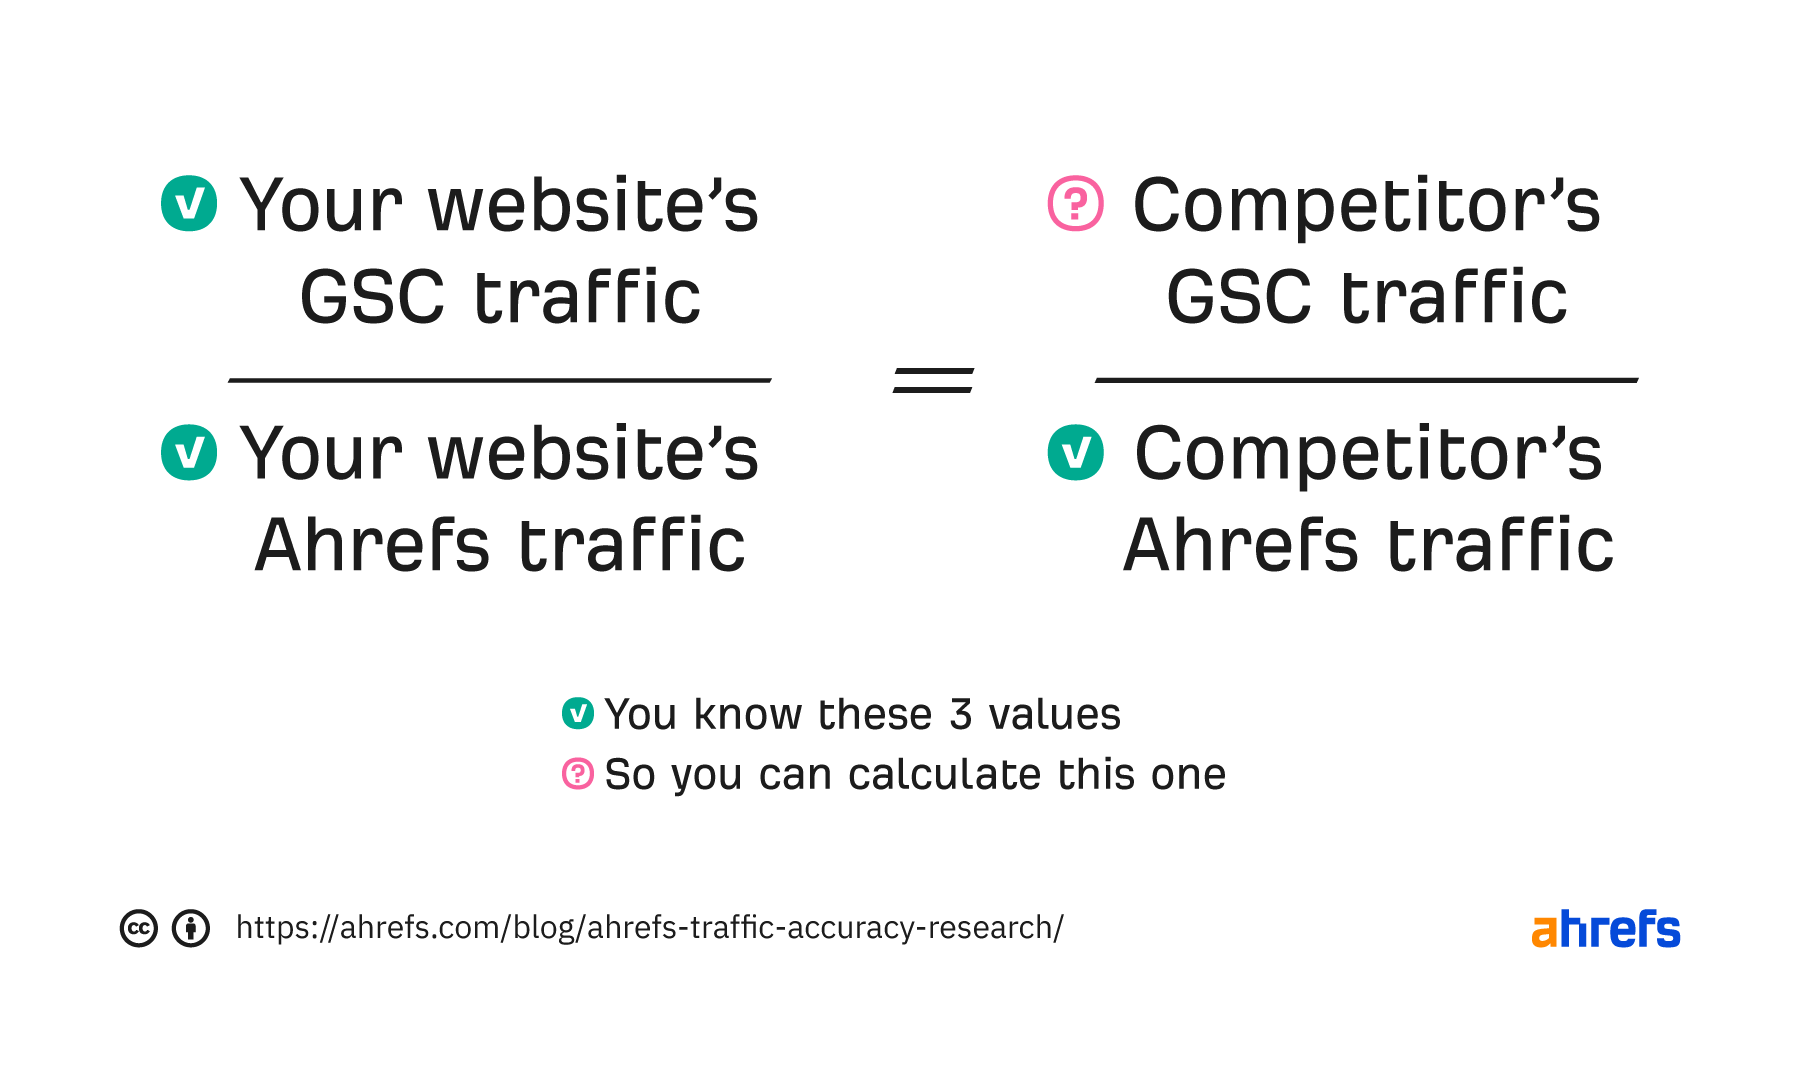 Ahrefs traffic discrepancy formula